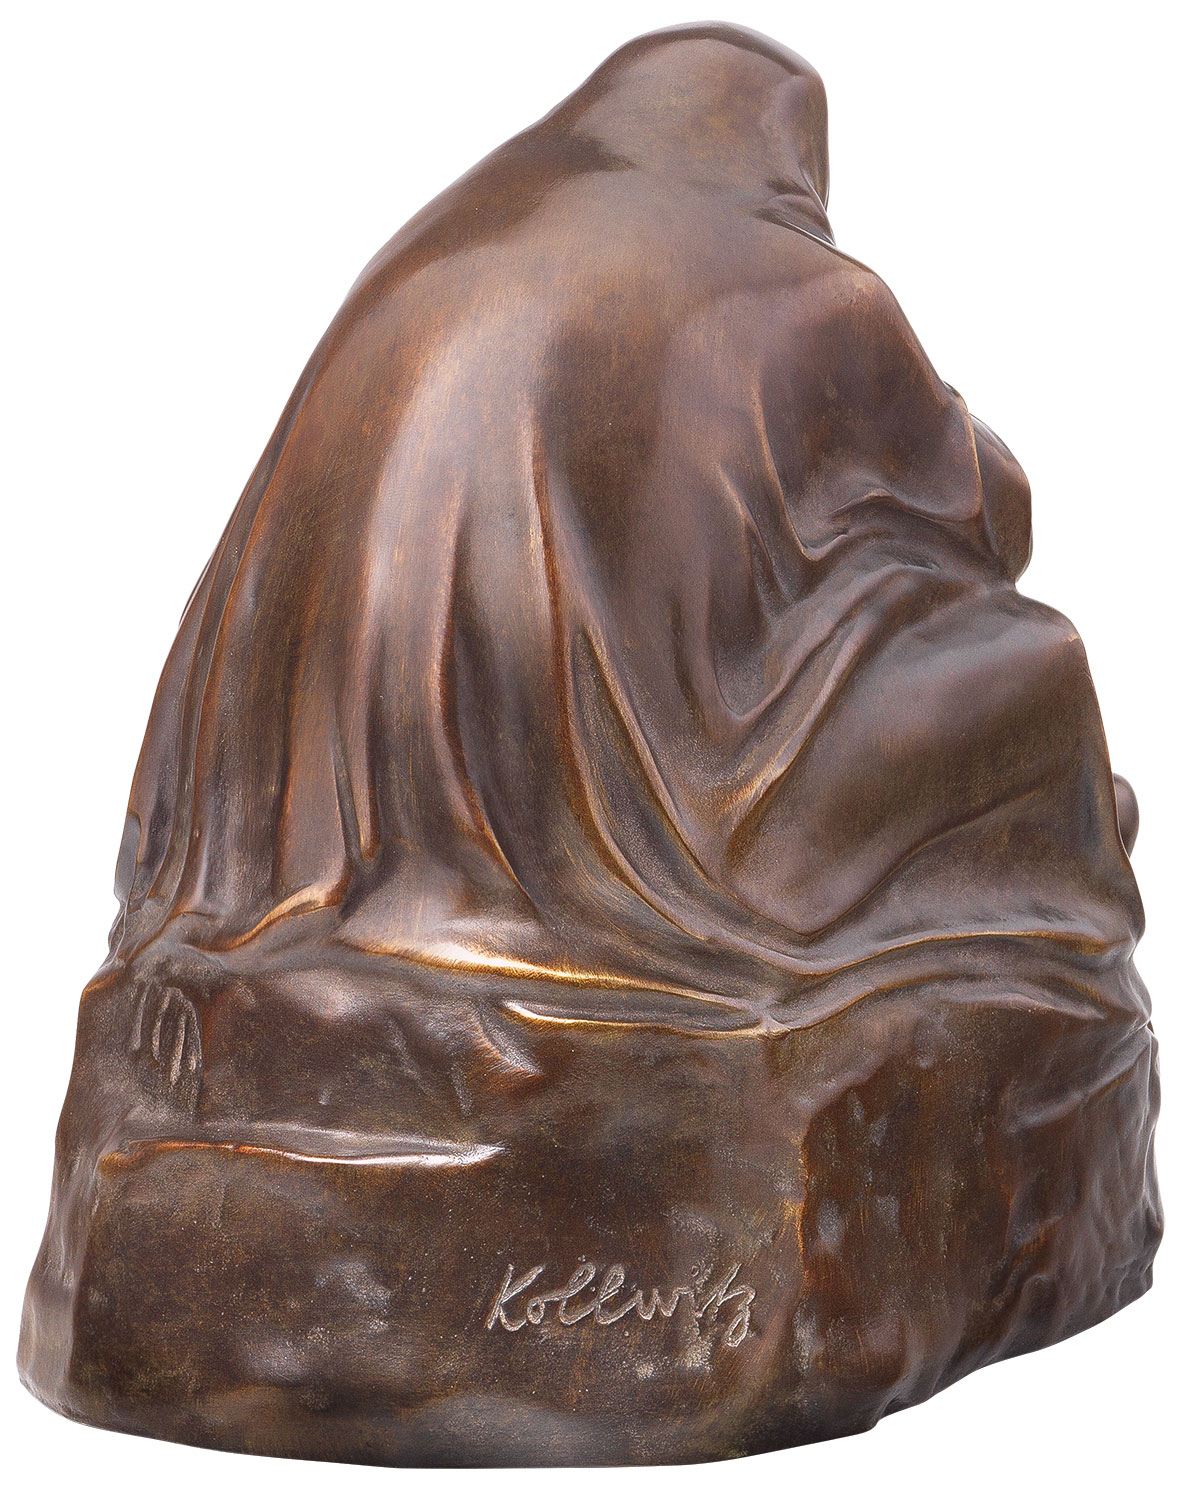 Skulptur "Pietà" (1938/39), Reduktion in Bronze